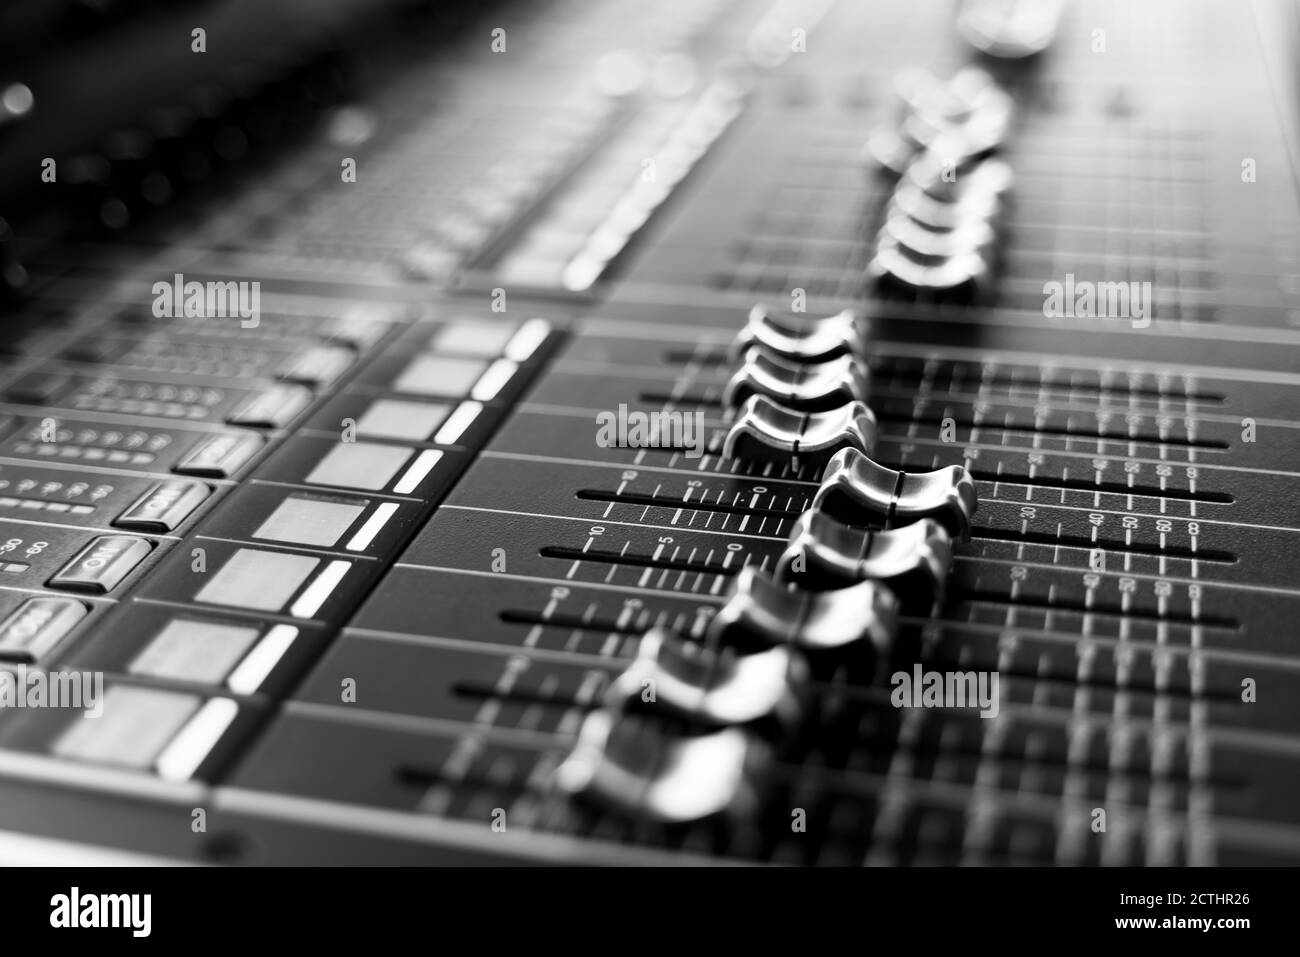 Console professionale di mixaggio audio con fader e manopole di regolazione, messa a fuoco selettiva in bianco e nero Foto Stock